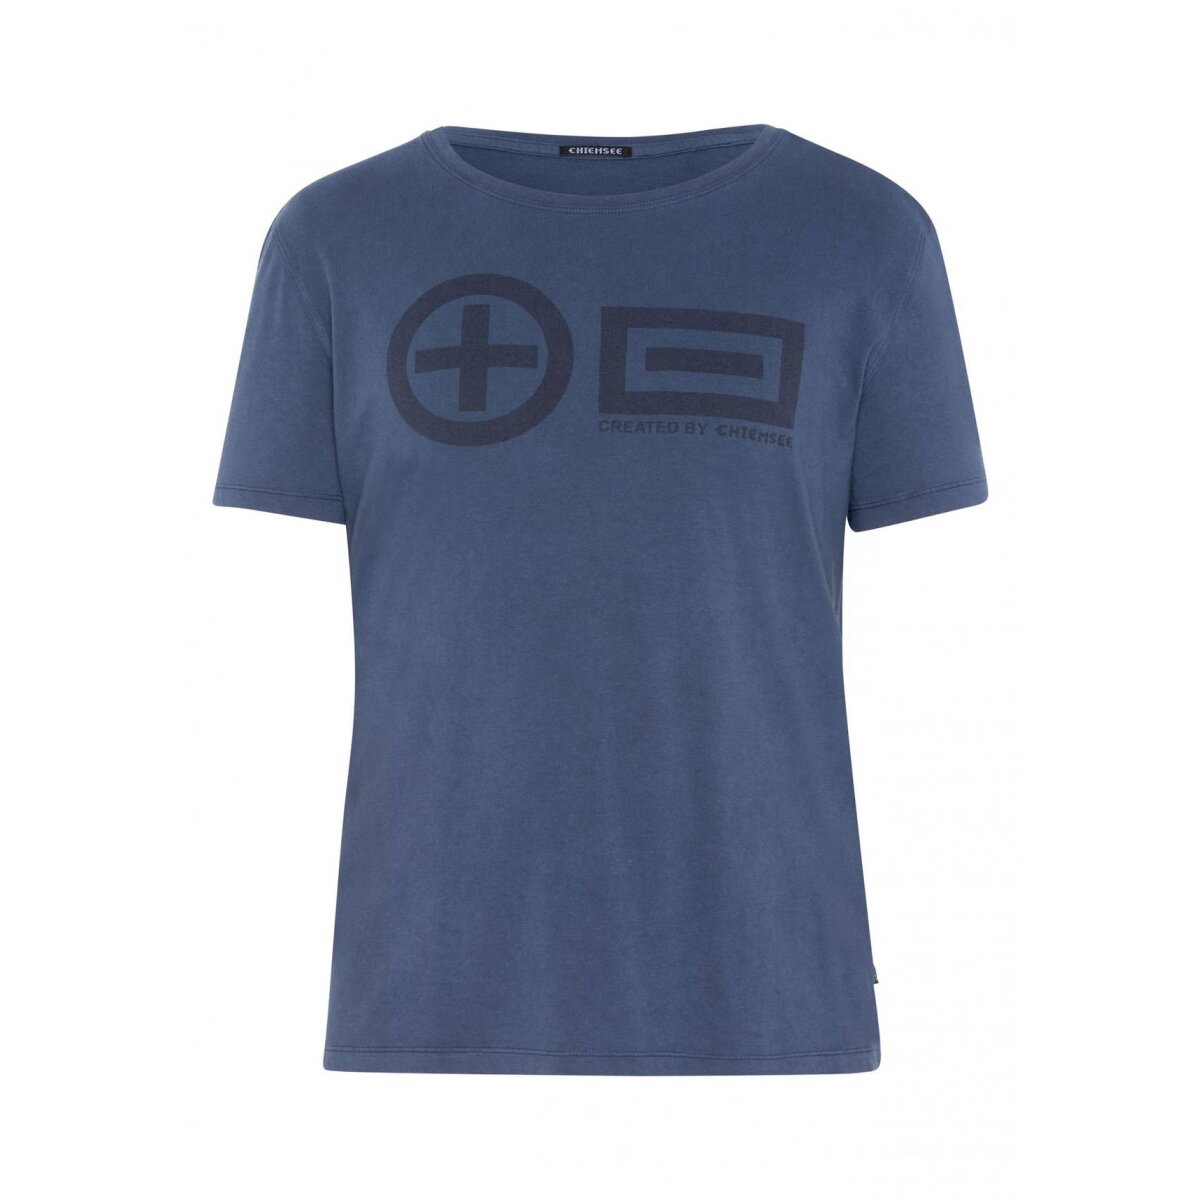 CHIEMSEE Men's T-Shirt - SABANG, 19,95 €